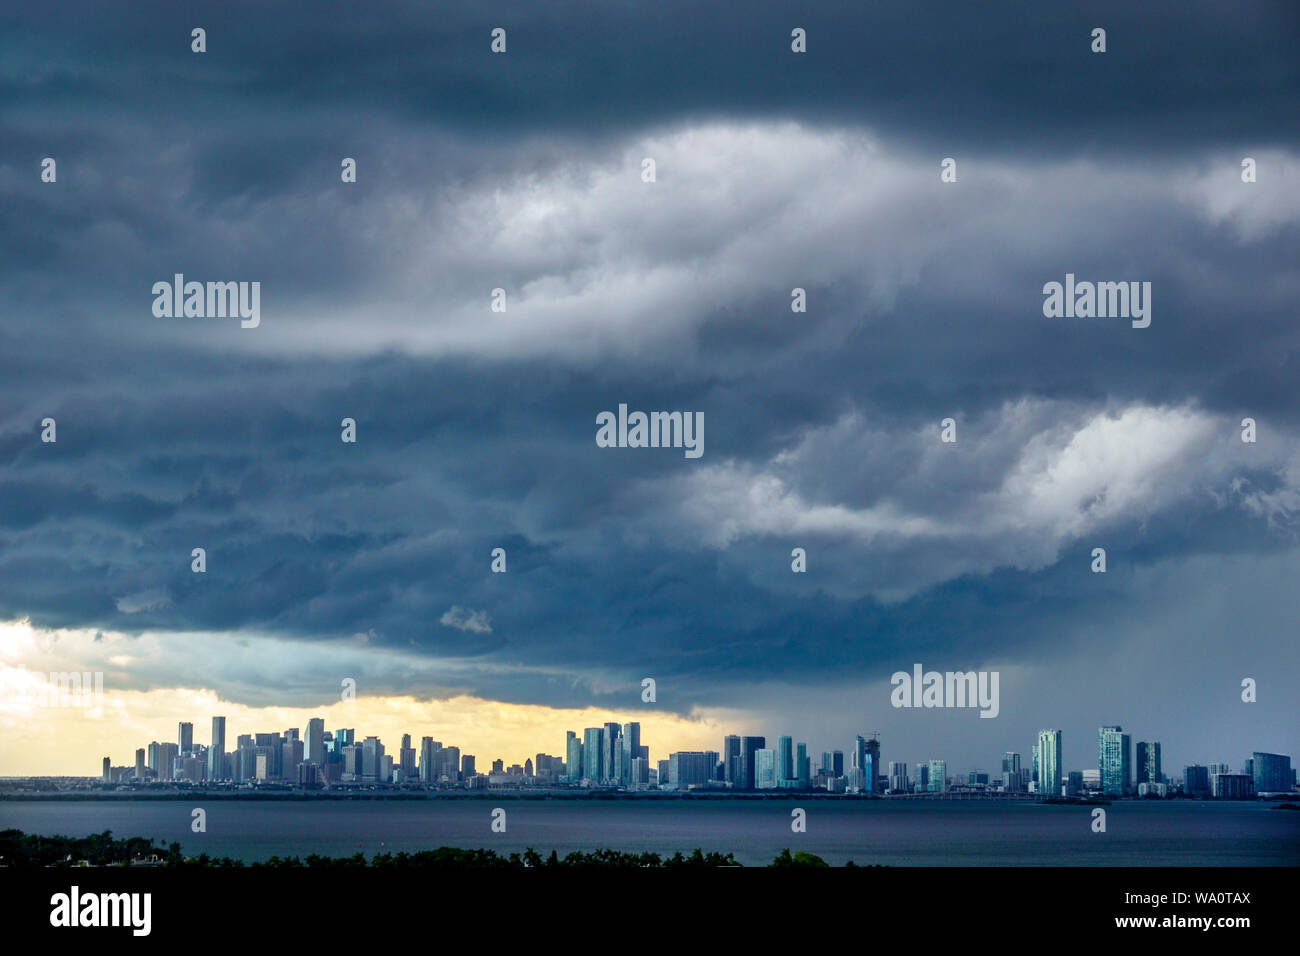 Miami Beach Florida, dunkle Wolken, Wetter, Himmel, Sturm, Wolken, Regen, Skyline der Stadt, Biscayne Bay, FL190731008 Stockfoto